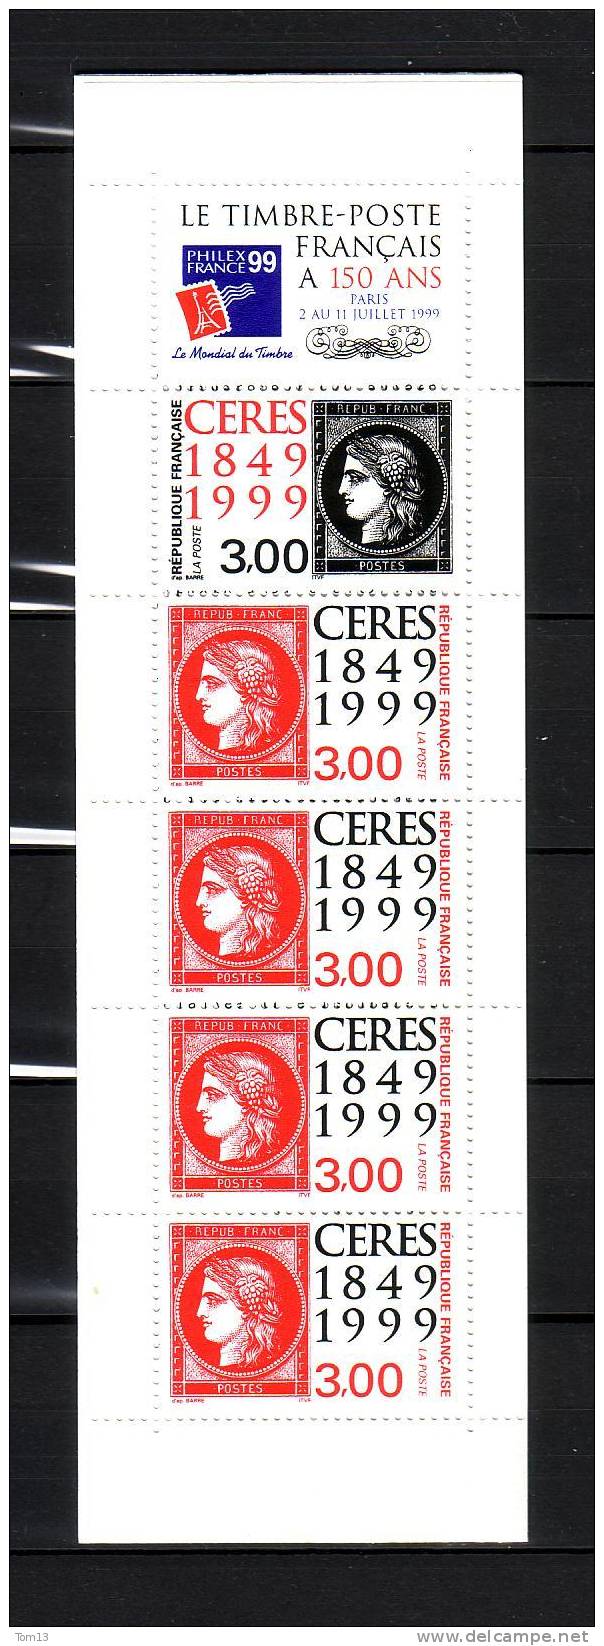 France, Carnet, 150ème Aniversaire, 1999, N° BC3213  Neuf ** - Commemoratives